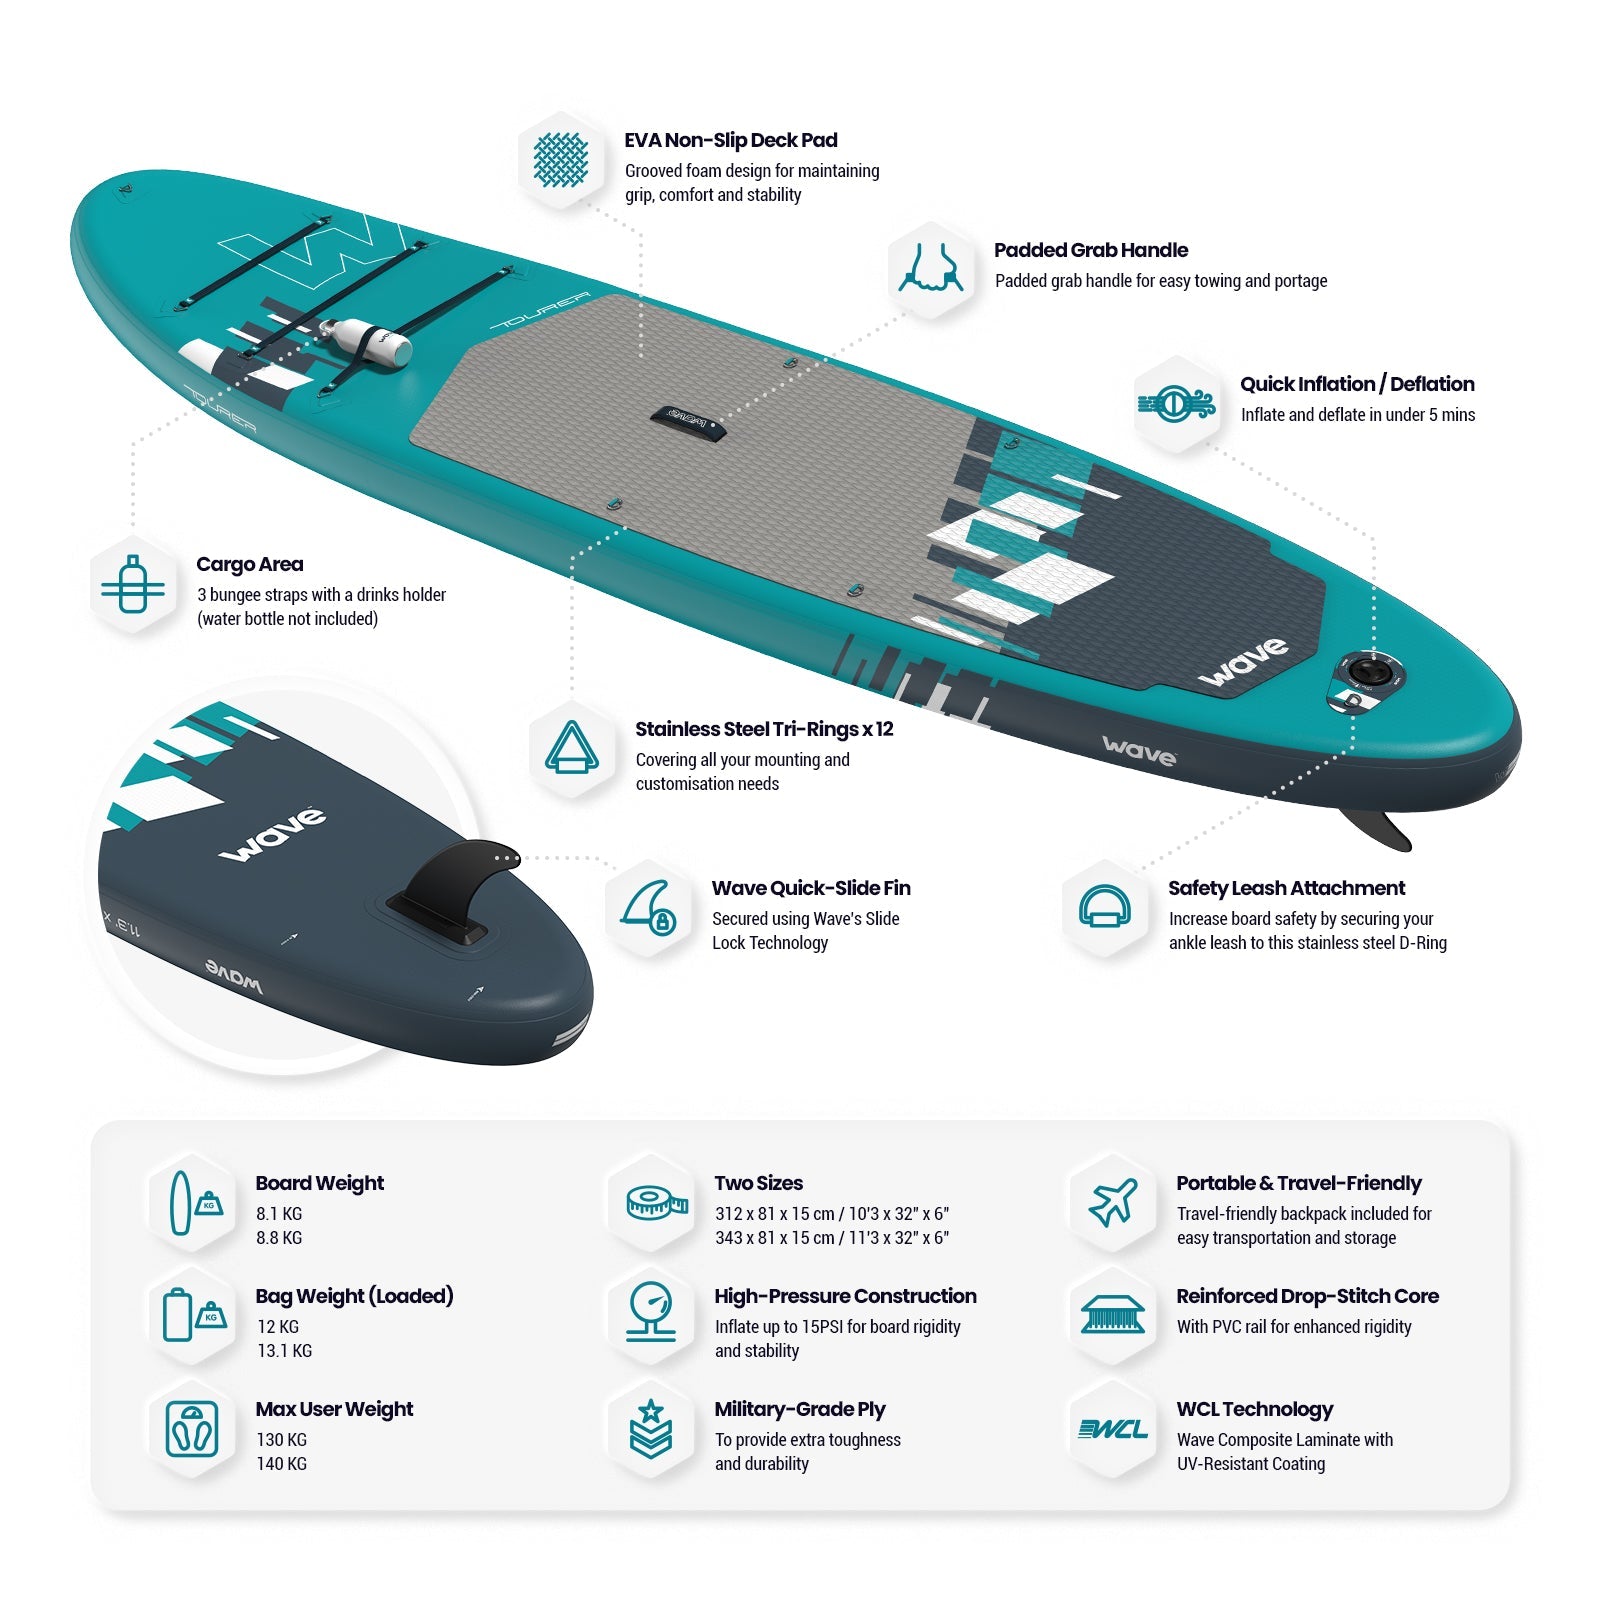 Tourer 2.0 SUP | Inflatable Paddleboard | 10'3/11'3ft | Aqua - Wave Sups USA